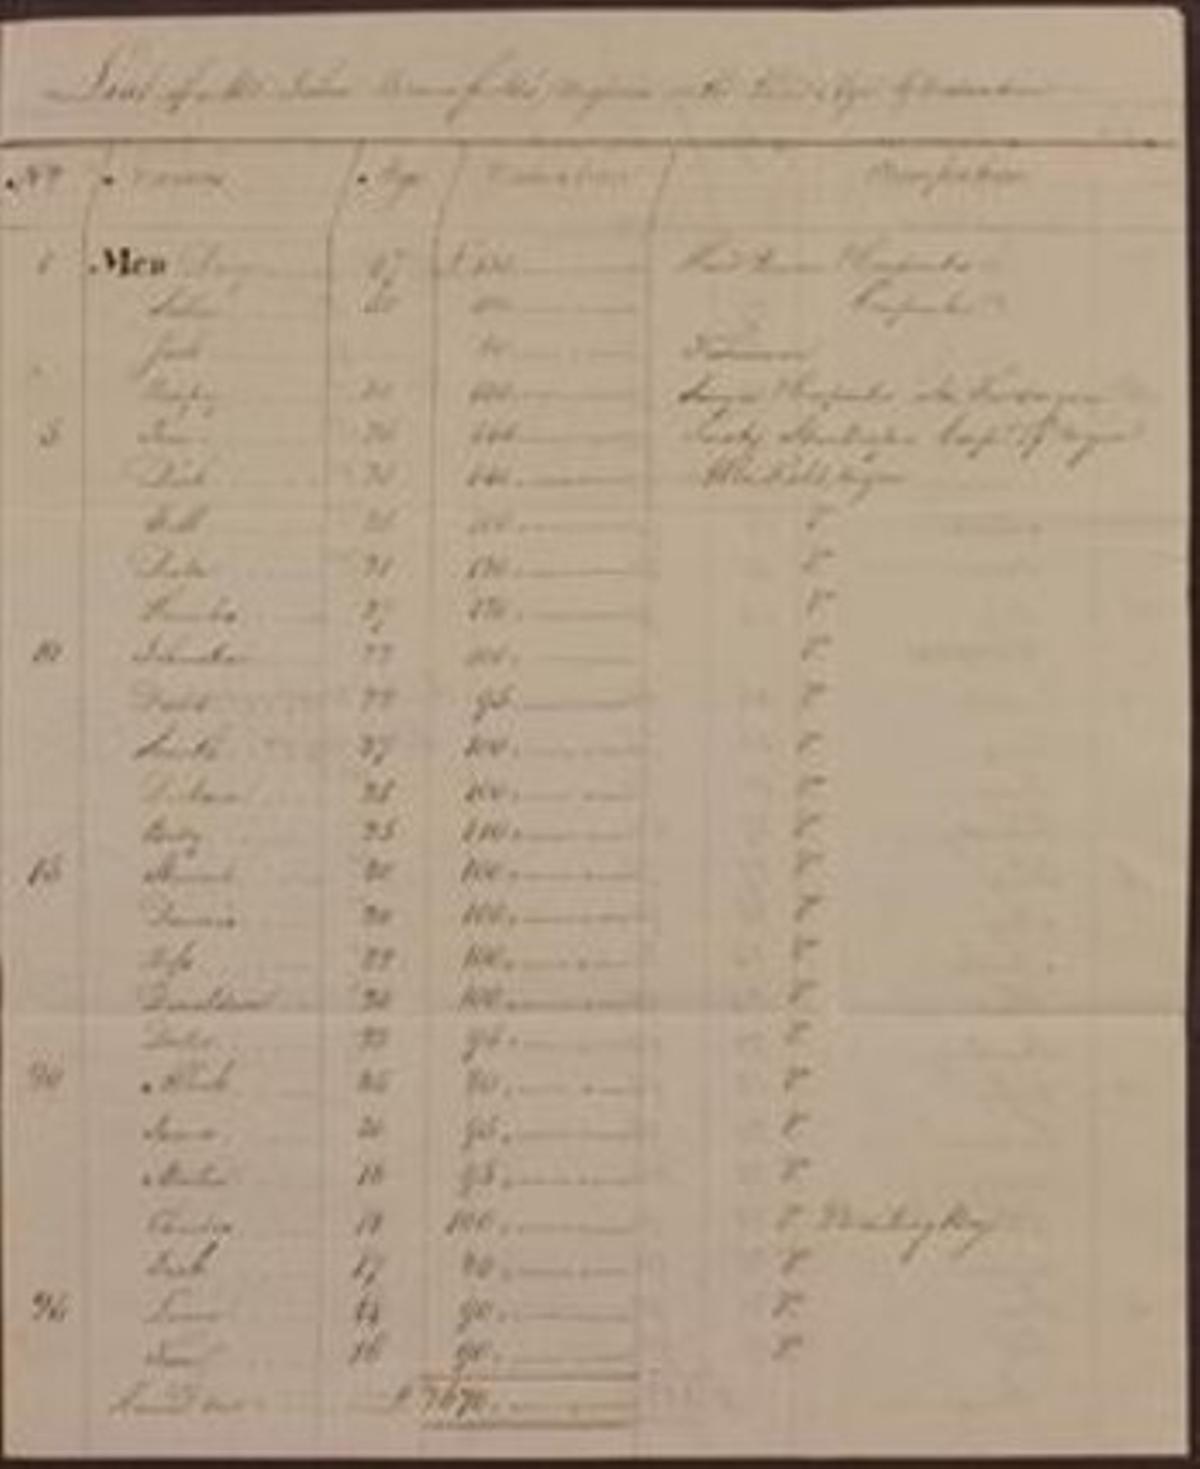 EL MERCADEIG3 Un dels documents disponibles, amb una petita descripció del potencial dels esclaus, nom, edat i cotització.